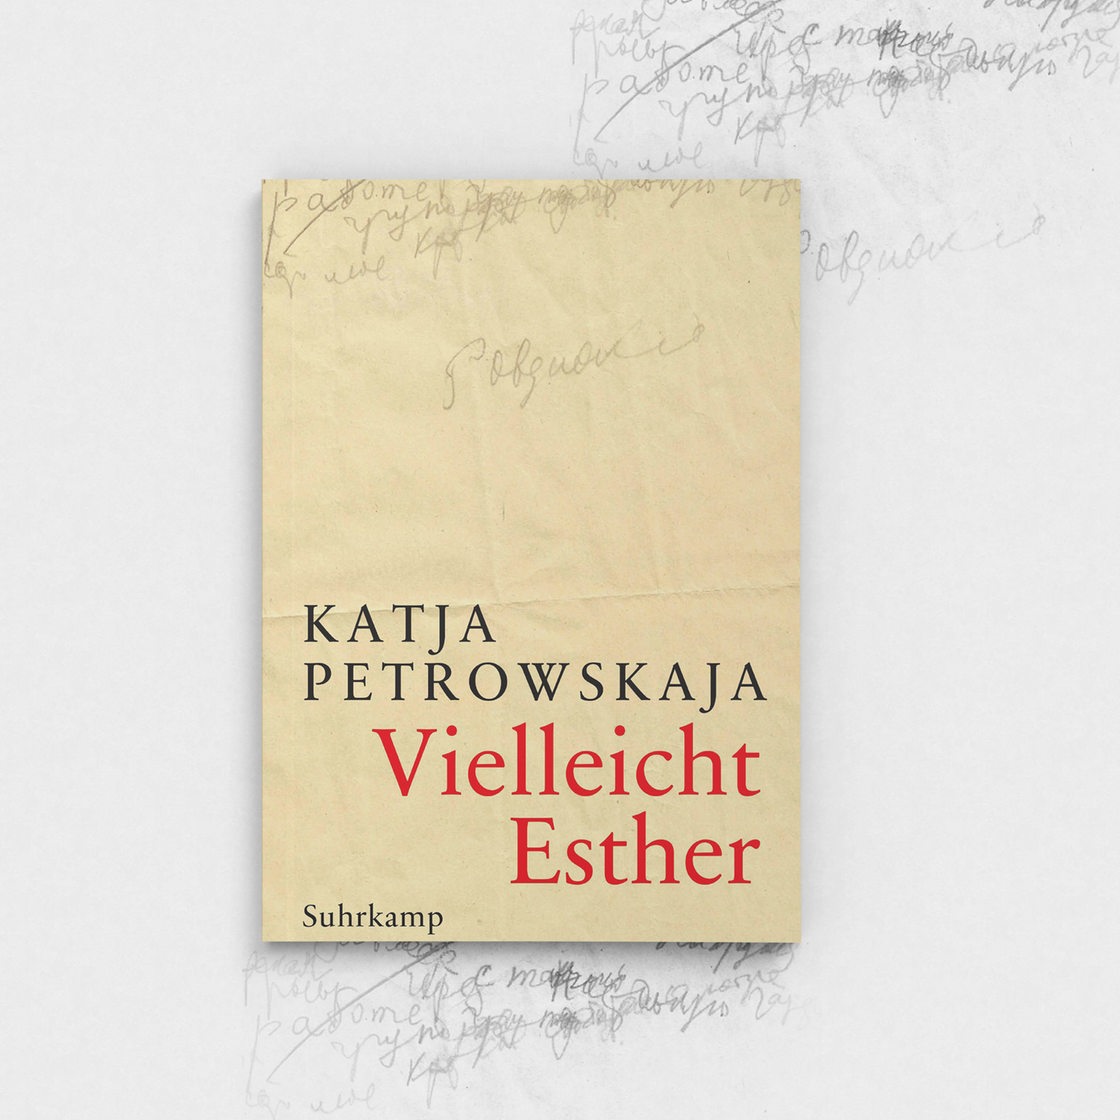 Buchcover Katja Petrowskaja "Vielleicht Esther"